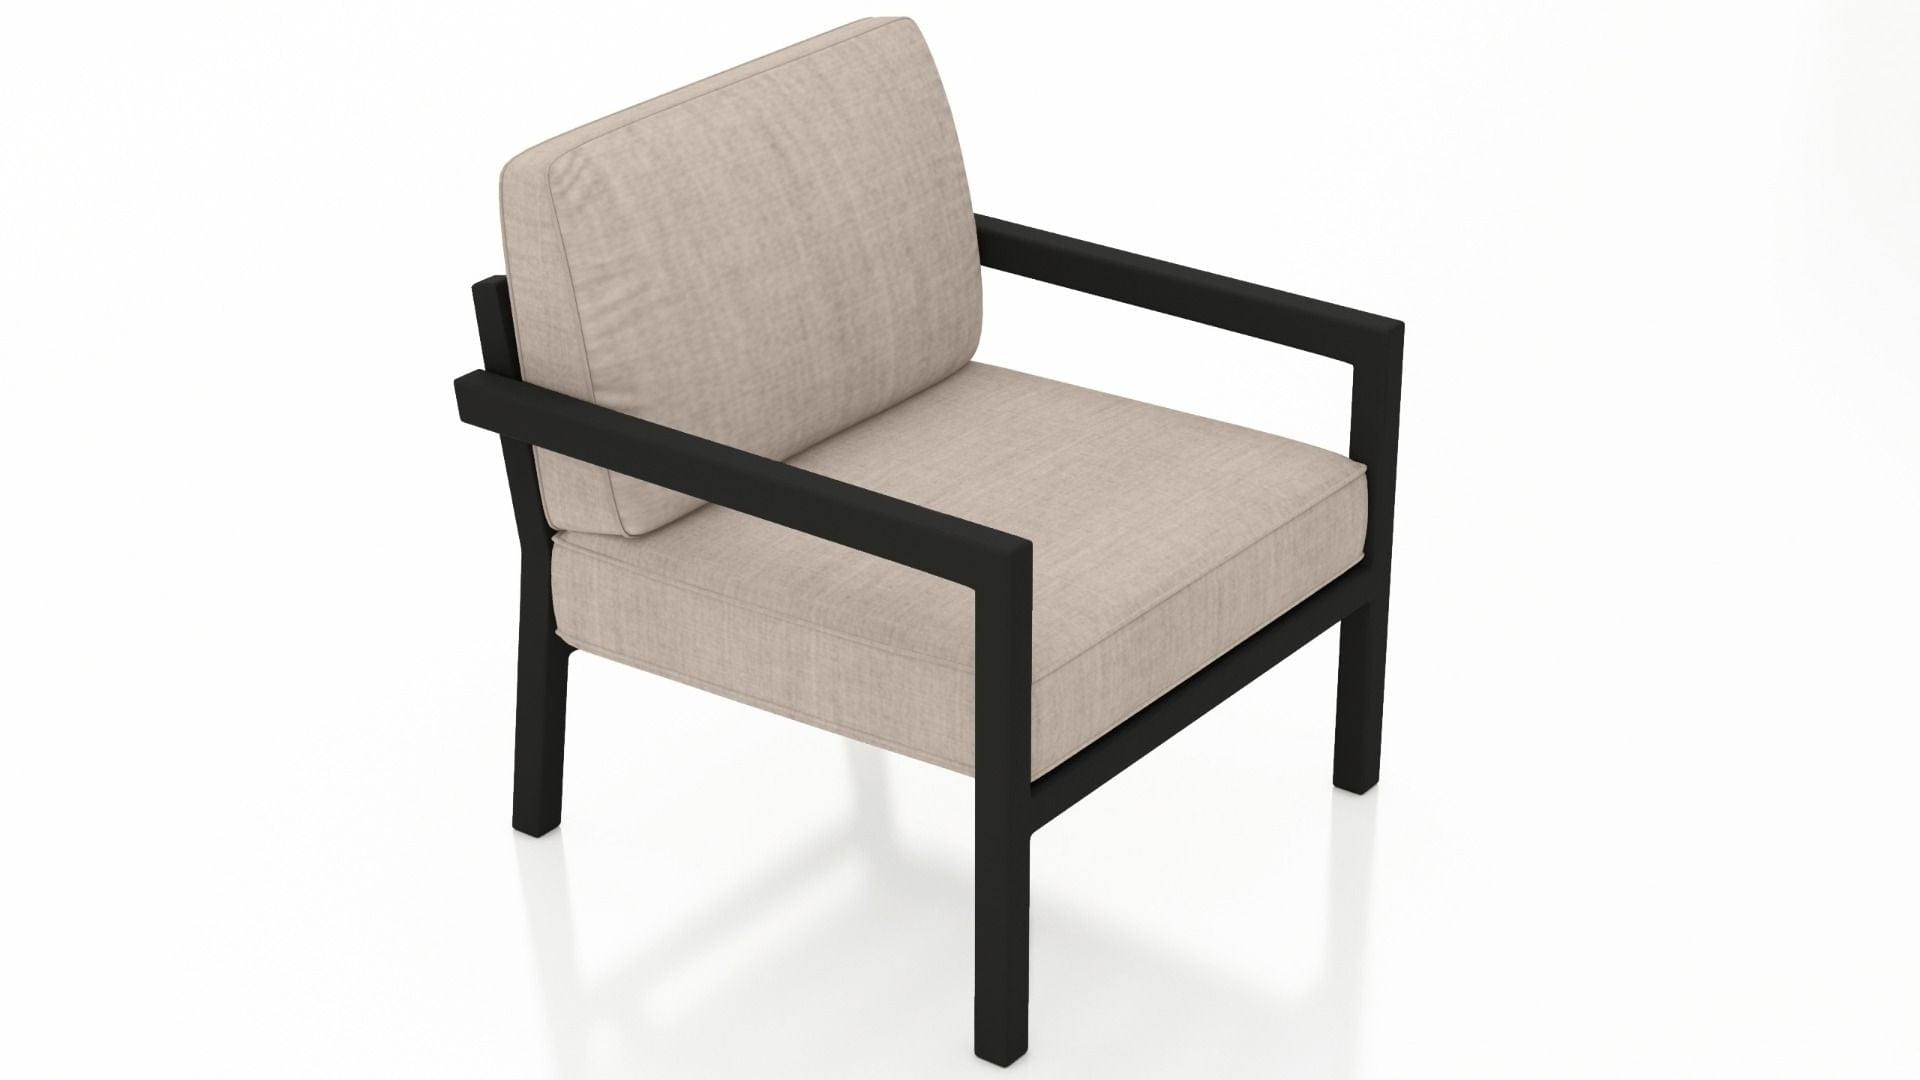 Harmonia Living Outdoor Furniture Canvas flax Harmonia Living - Pacifica Club Chair - Black | HL-PAC-BK-CC